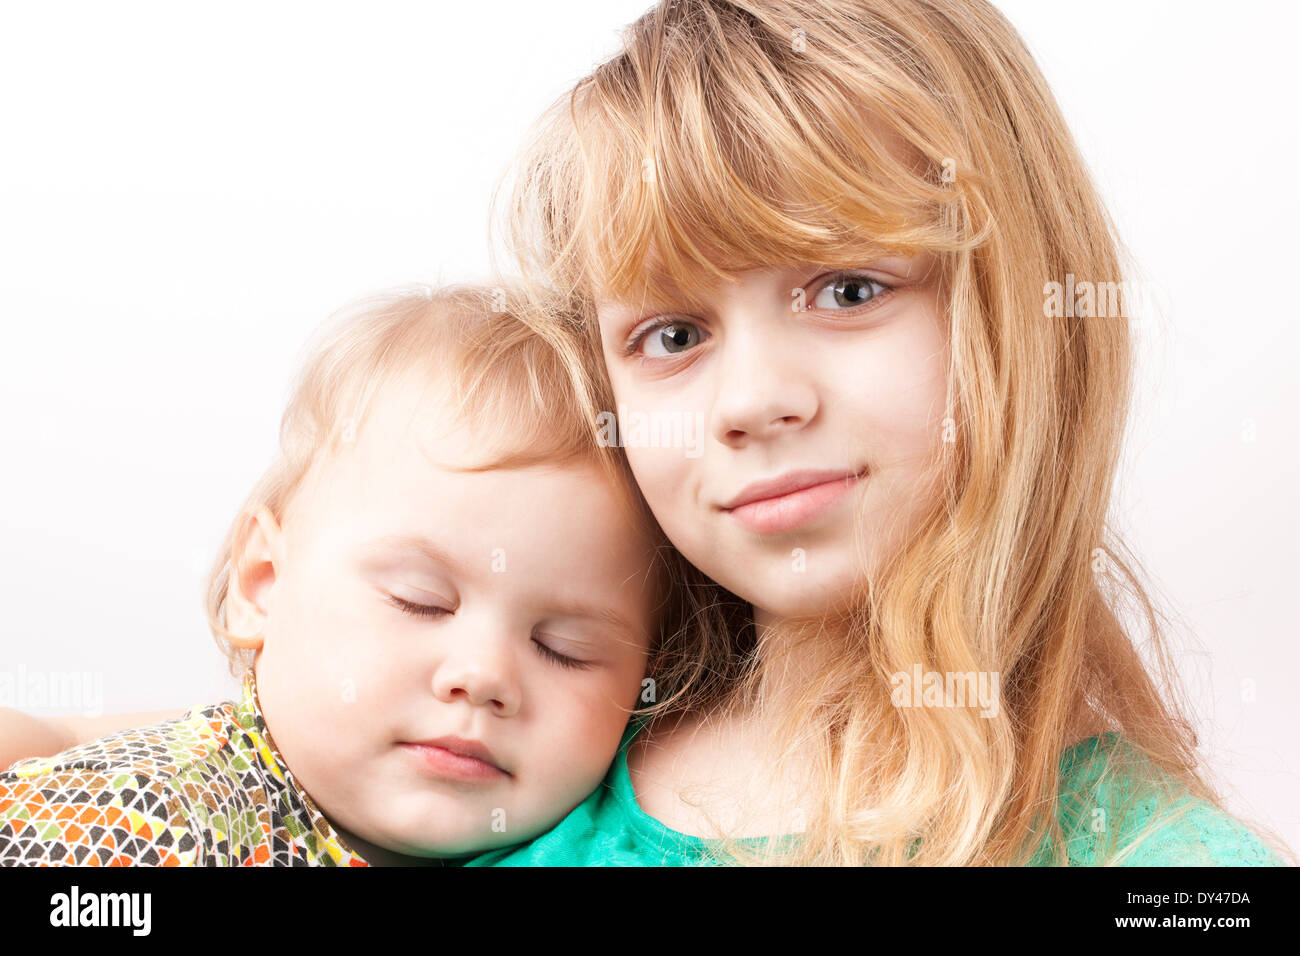 Kleine blonde kaukasische Mädchen mit schlafenden Schwester. Porträt auf weißem Hintergrund Stockfoto